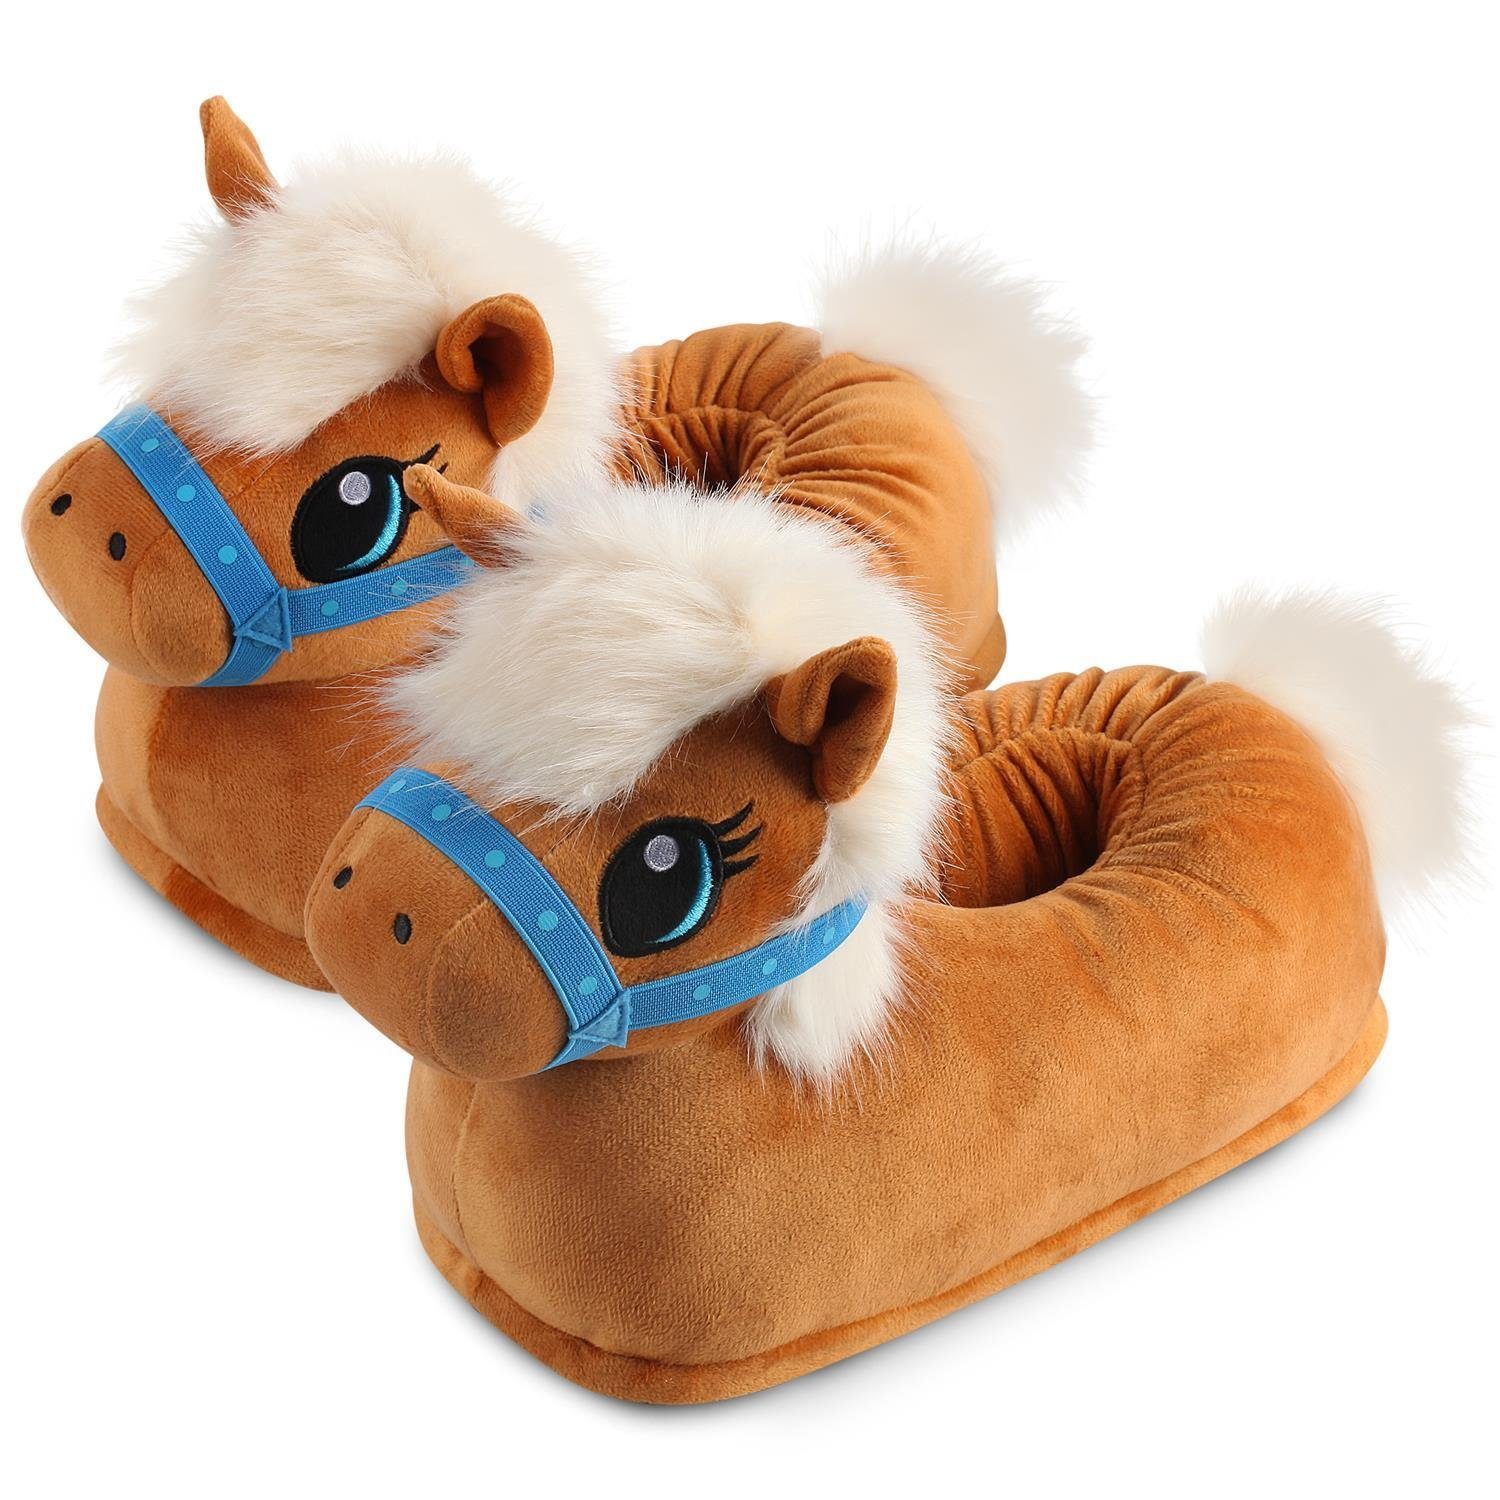 Corimori Tier Pantoffeln für Erwachsene Einheitsgröße 34-44 Plüsch Hausschuhe Witzige, lustige Tier-Hausschuhe, Erwachsene, Damen, Herren, Plüsch "Josy" das Pony (braun)